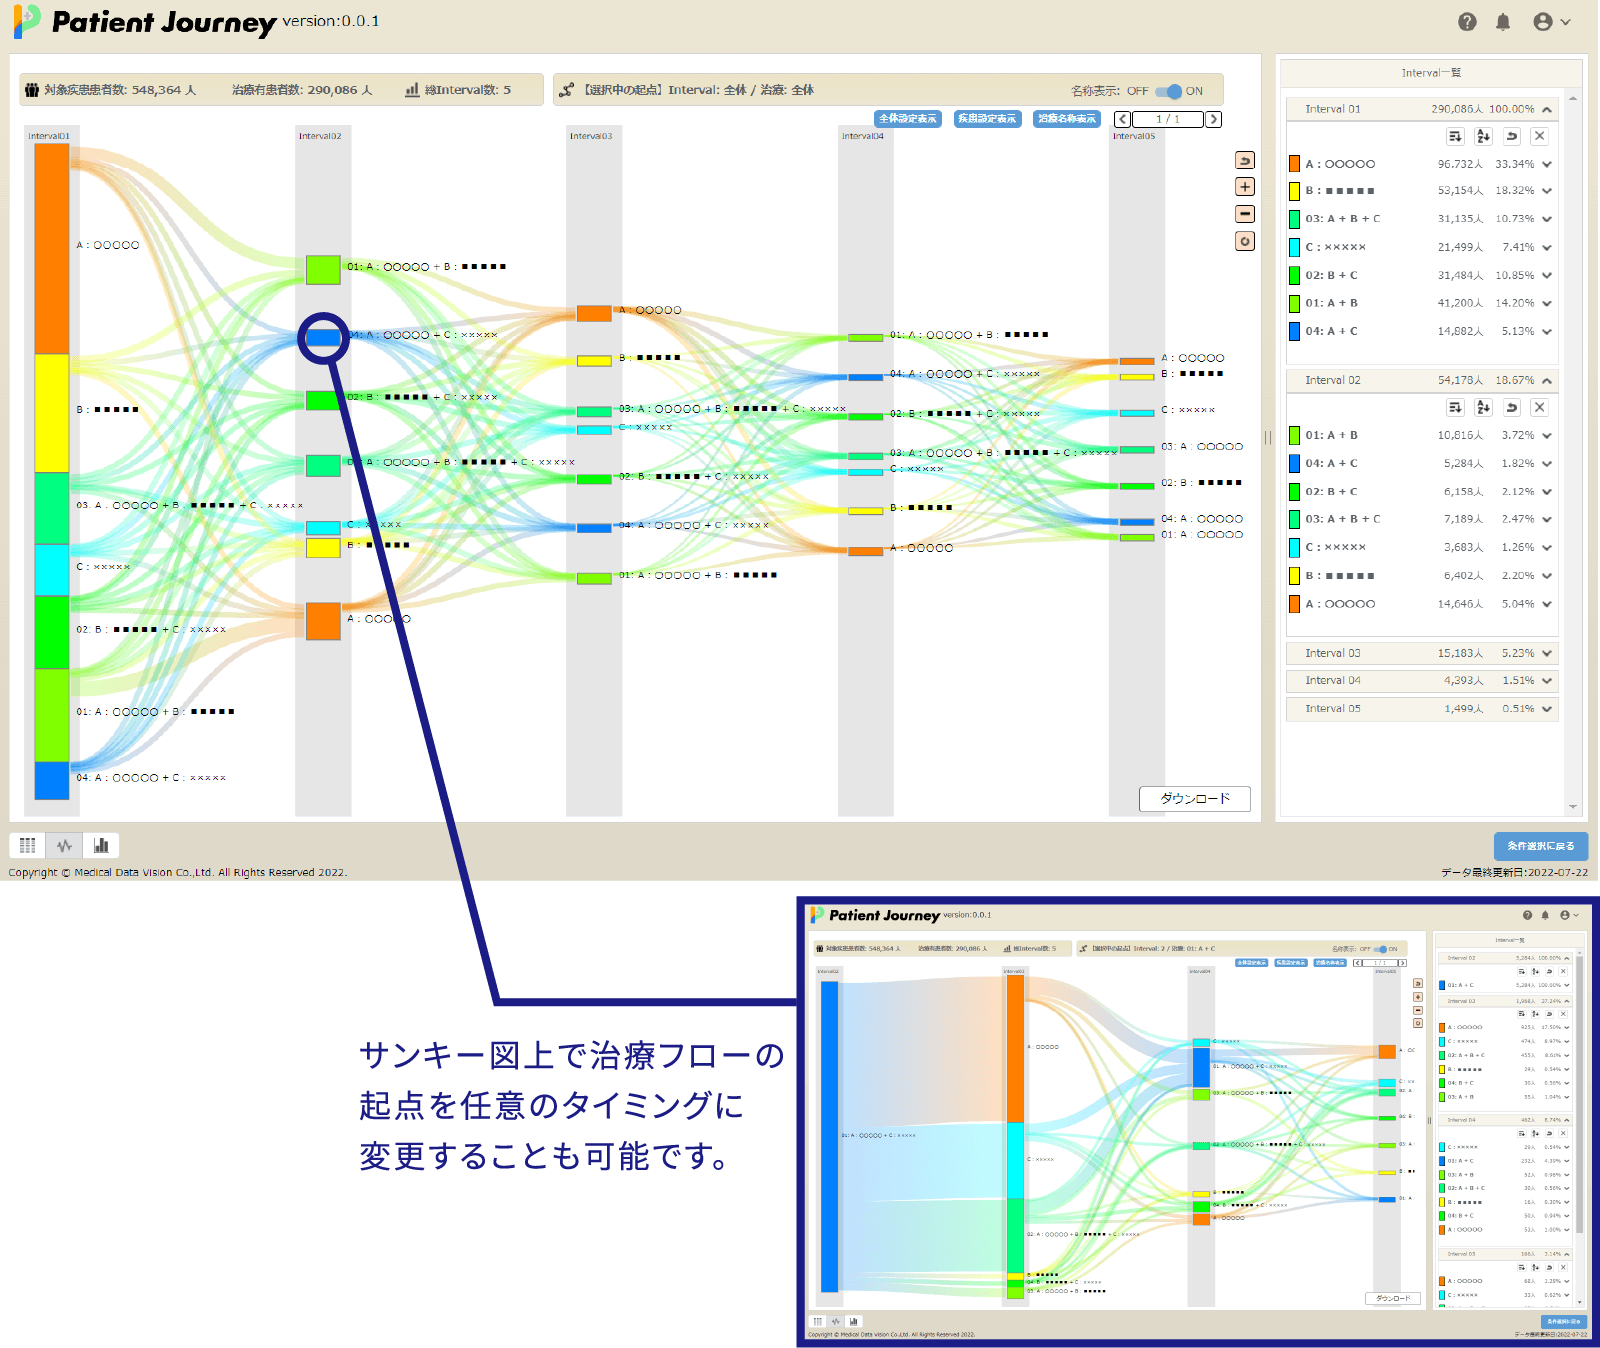 MDV analyzer for Patient Journeyのサンキー図